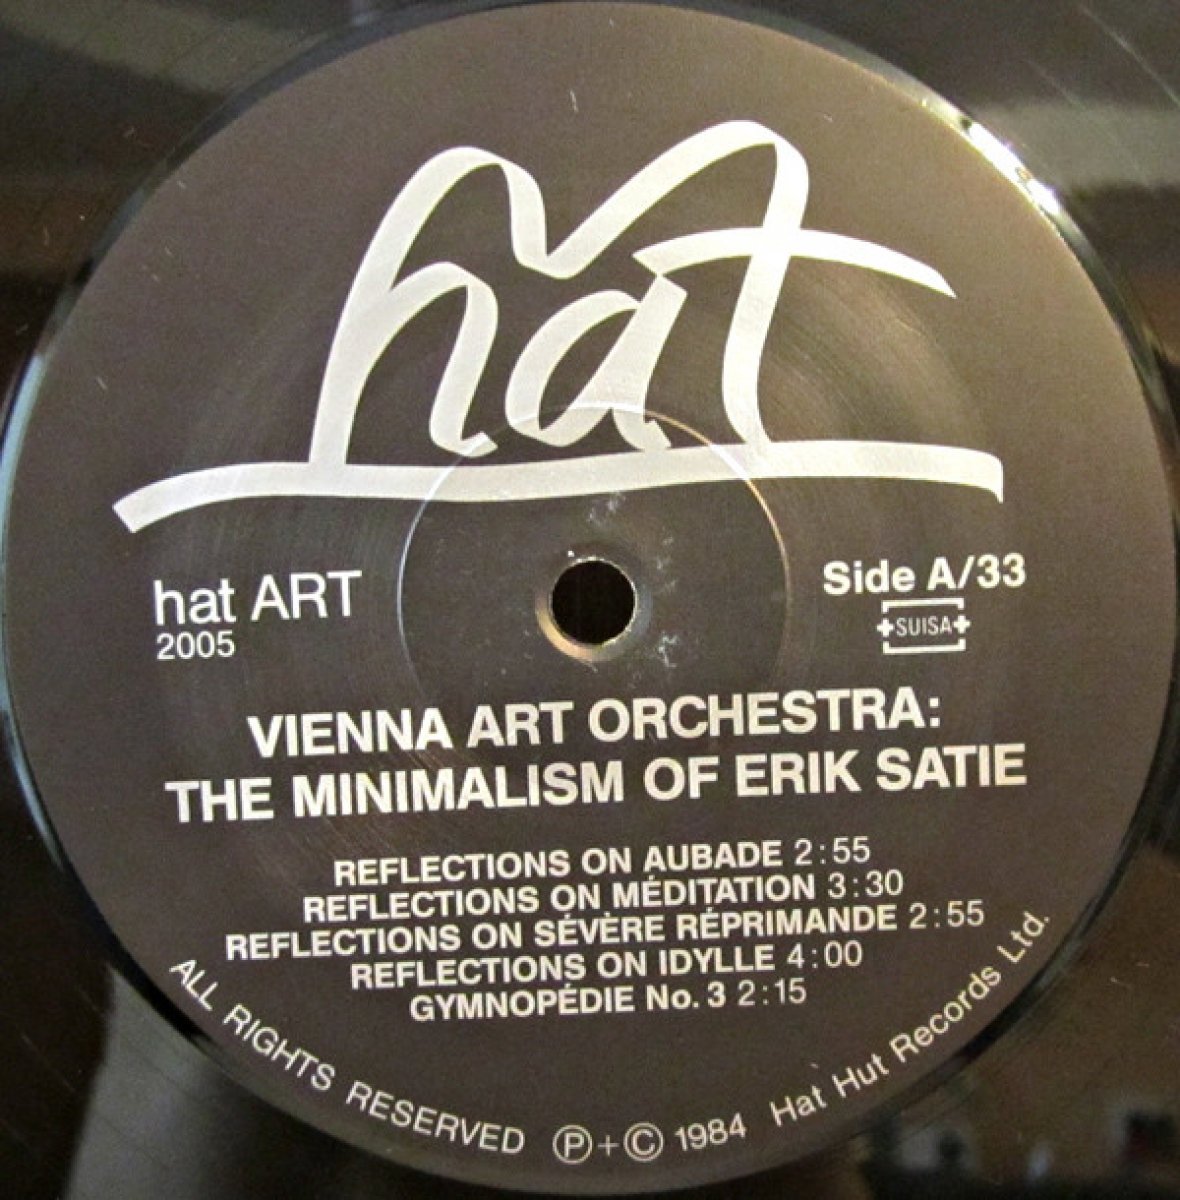 Vienna Art Orchestra "The Minimalism Of Erik Satie"